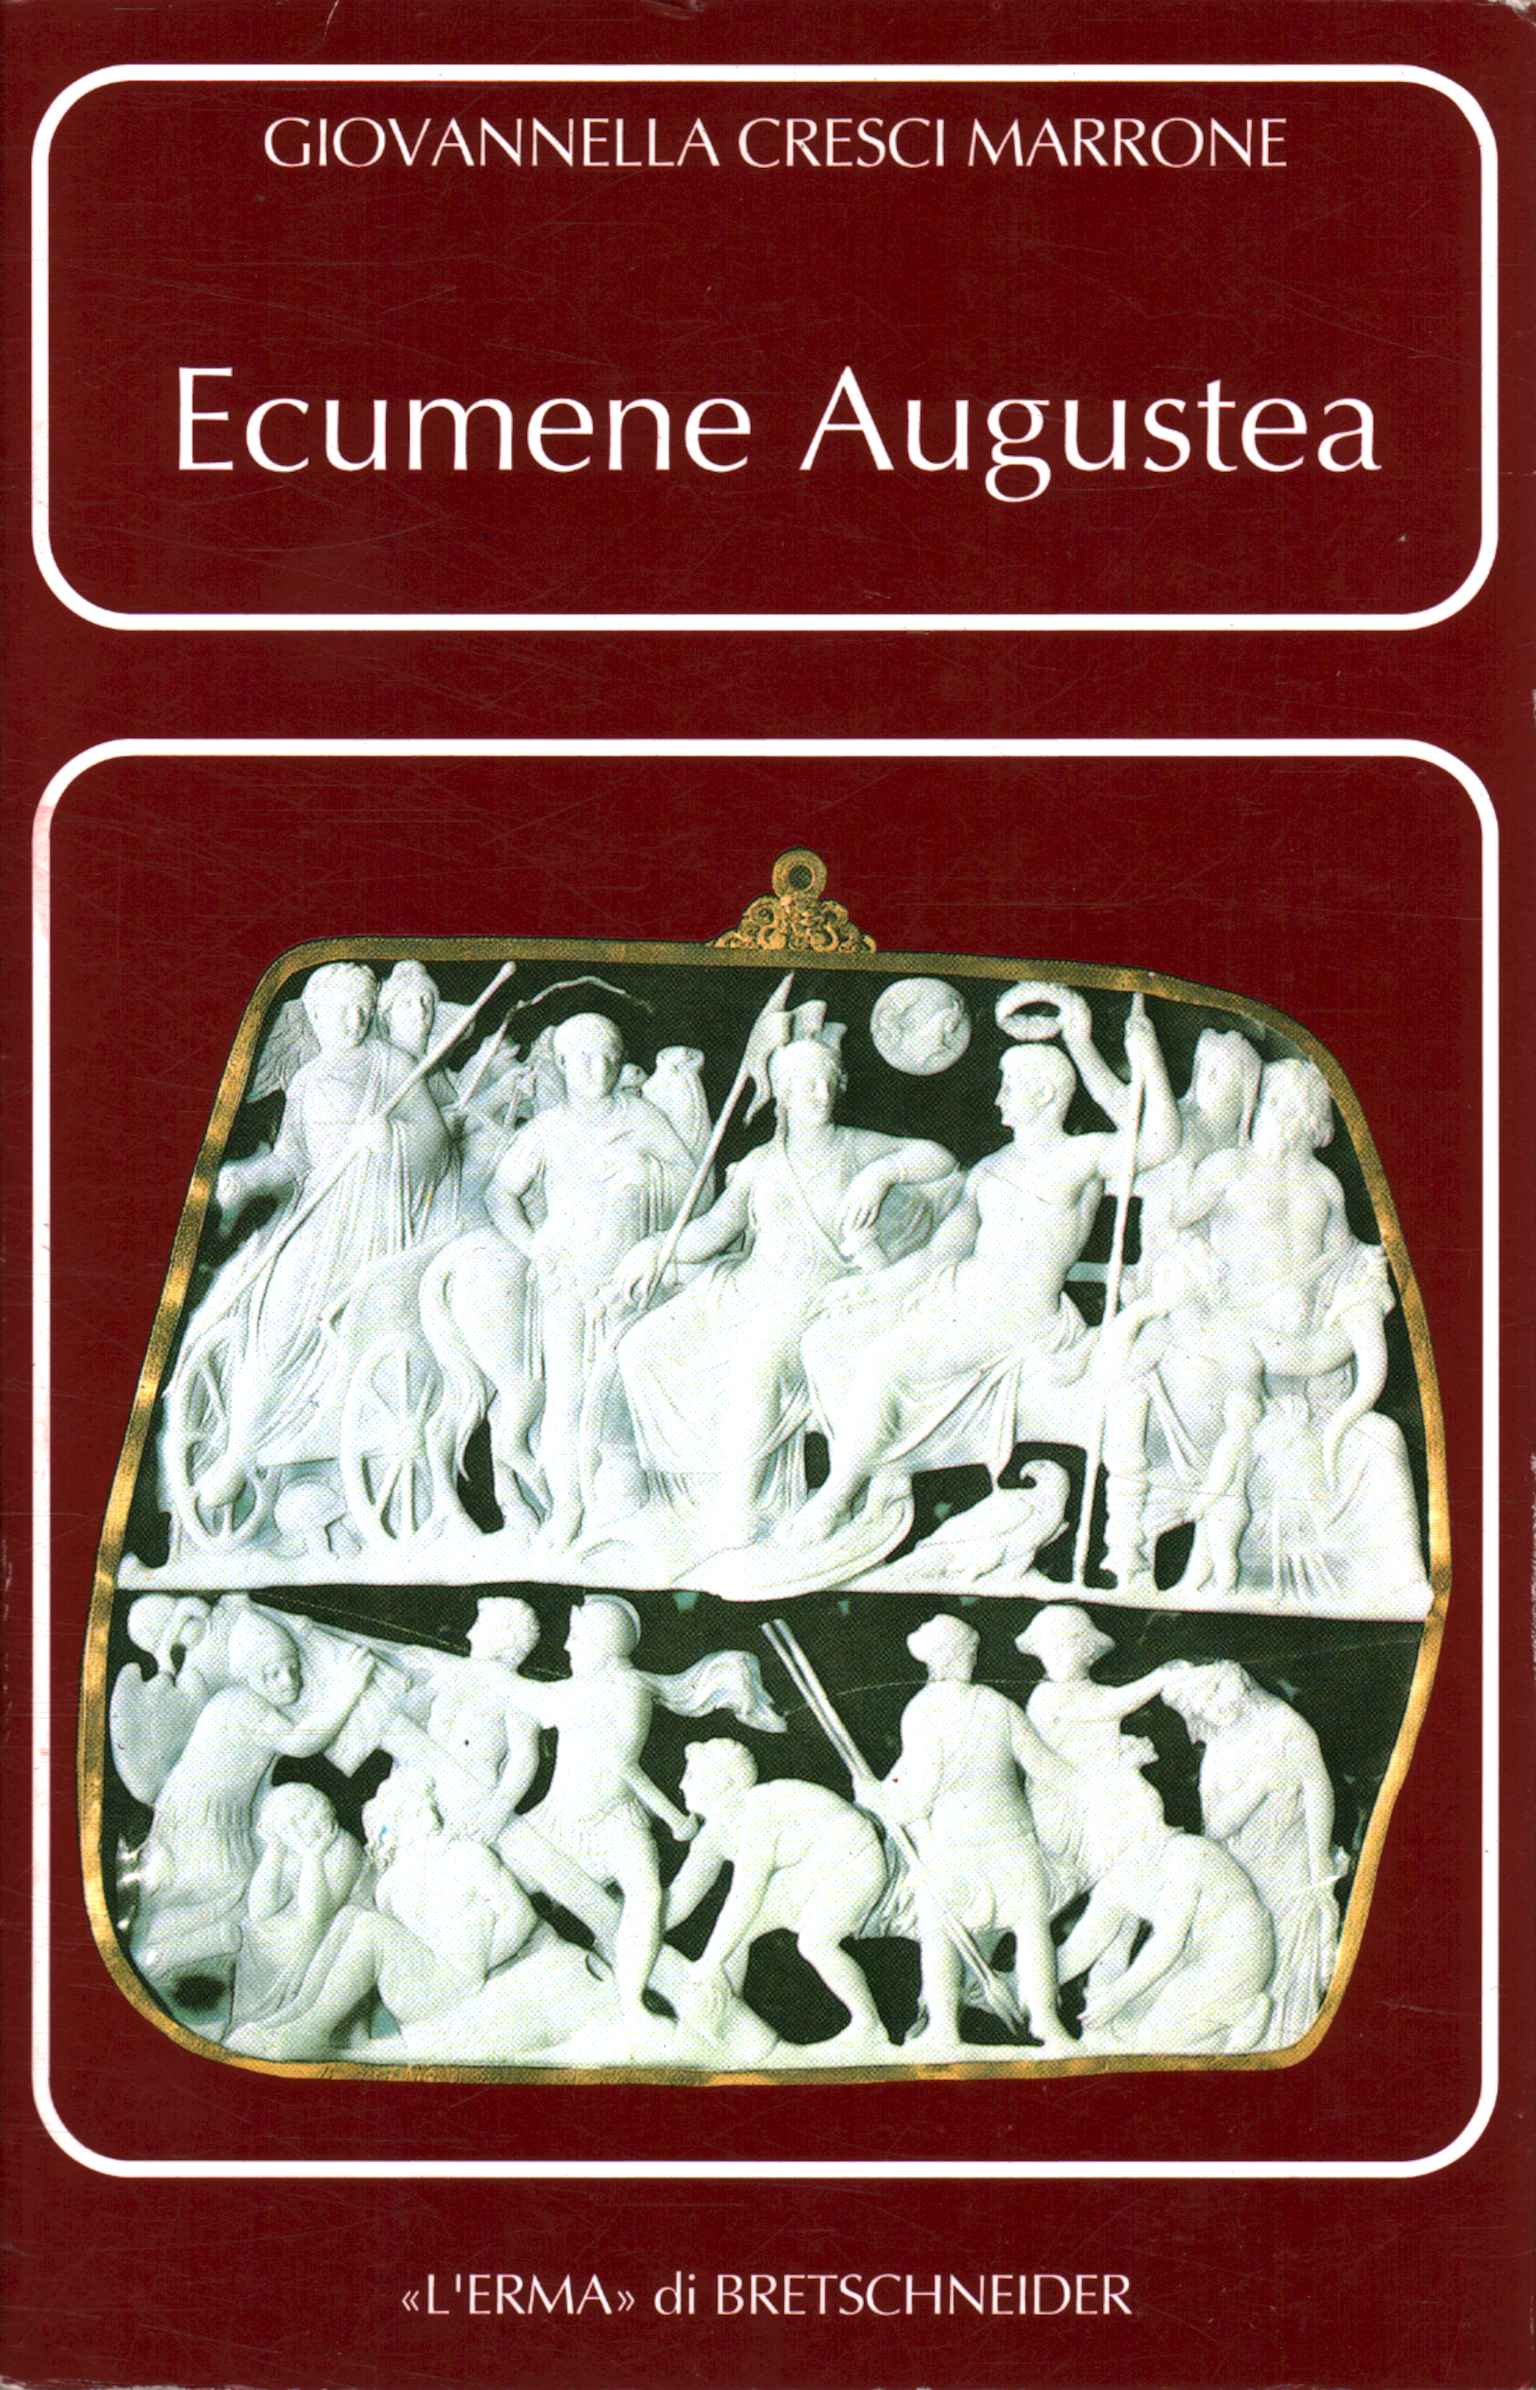 Augustan ecumene